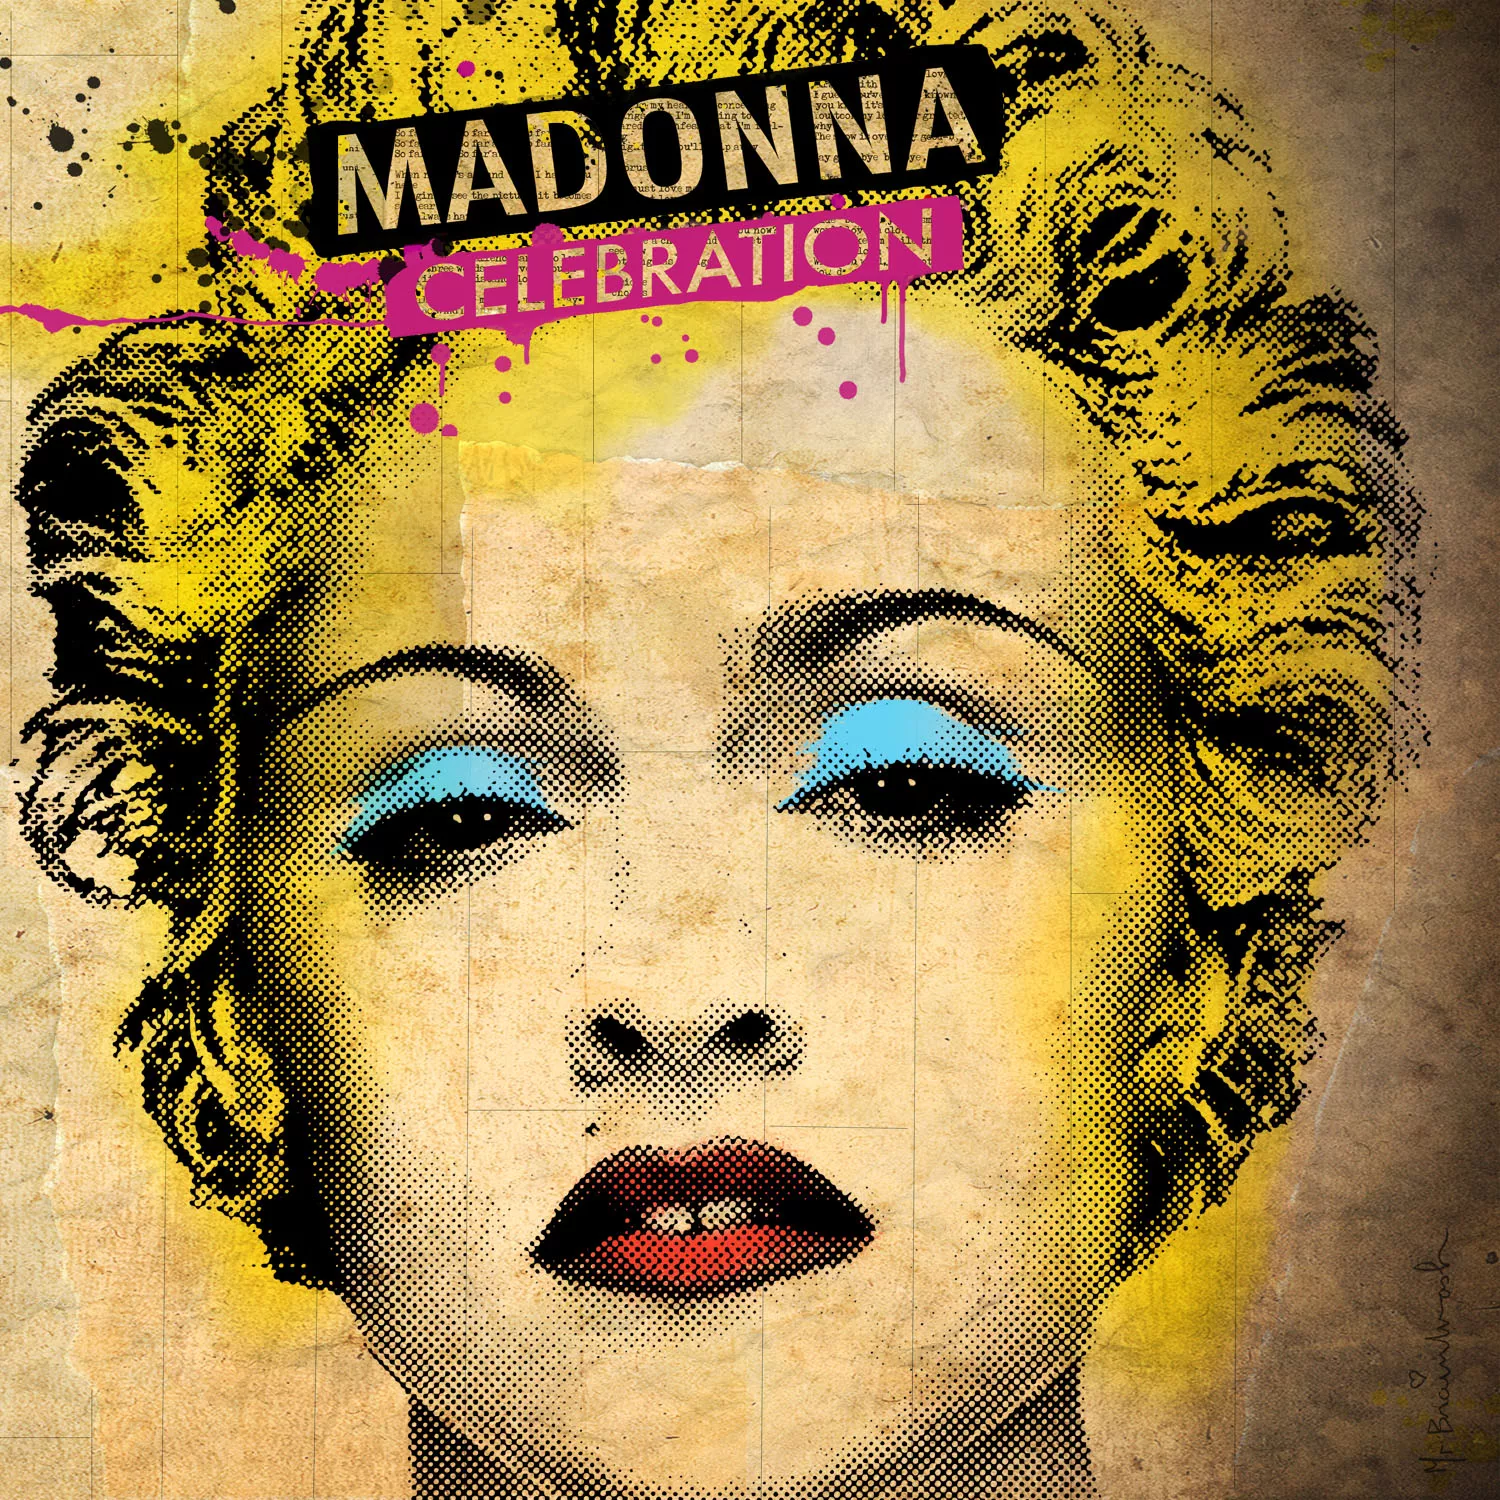 Madonna-opsamling rykket en uge frem